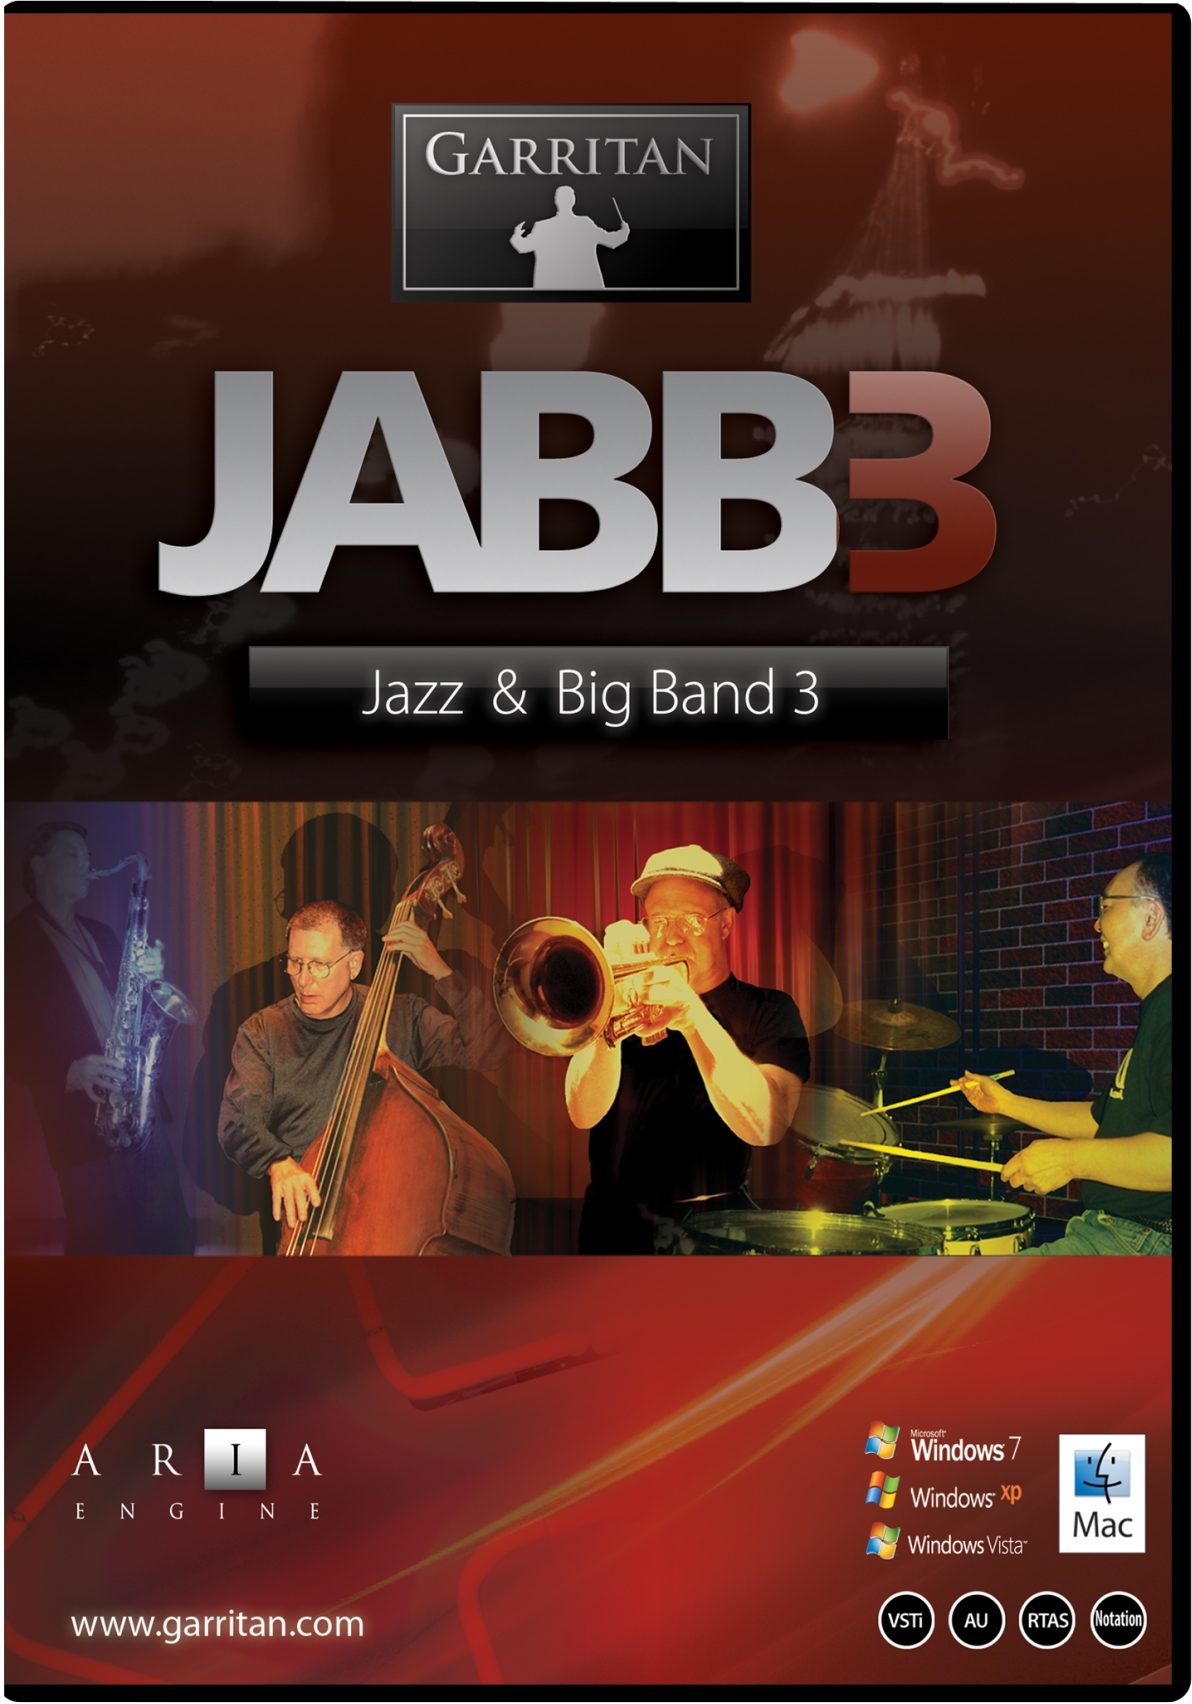 Garritan jazz and big band 3 free download